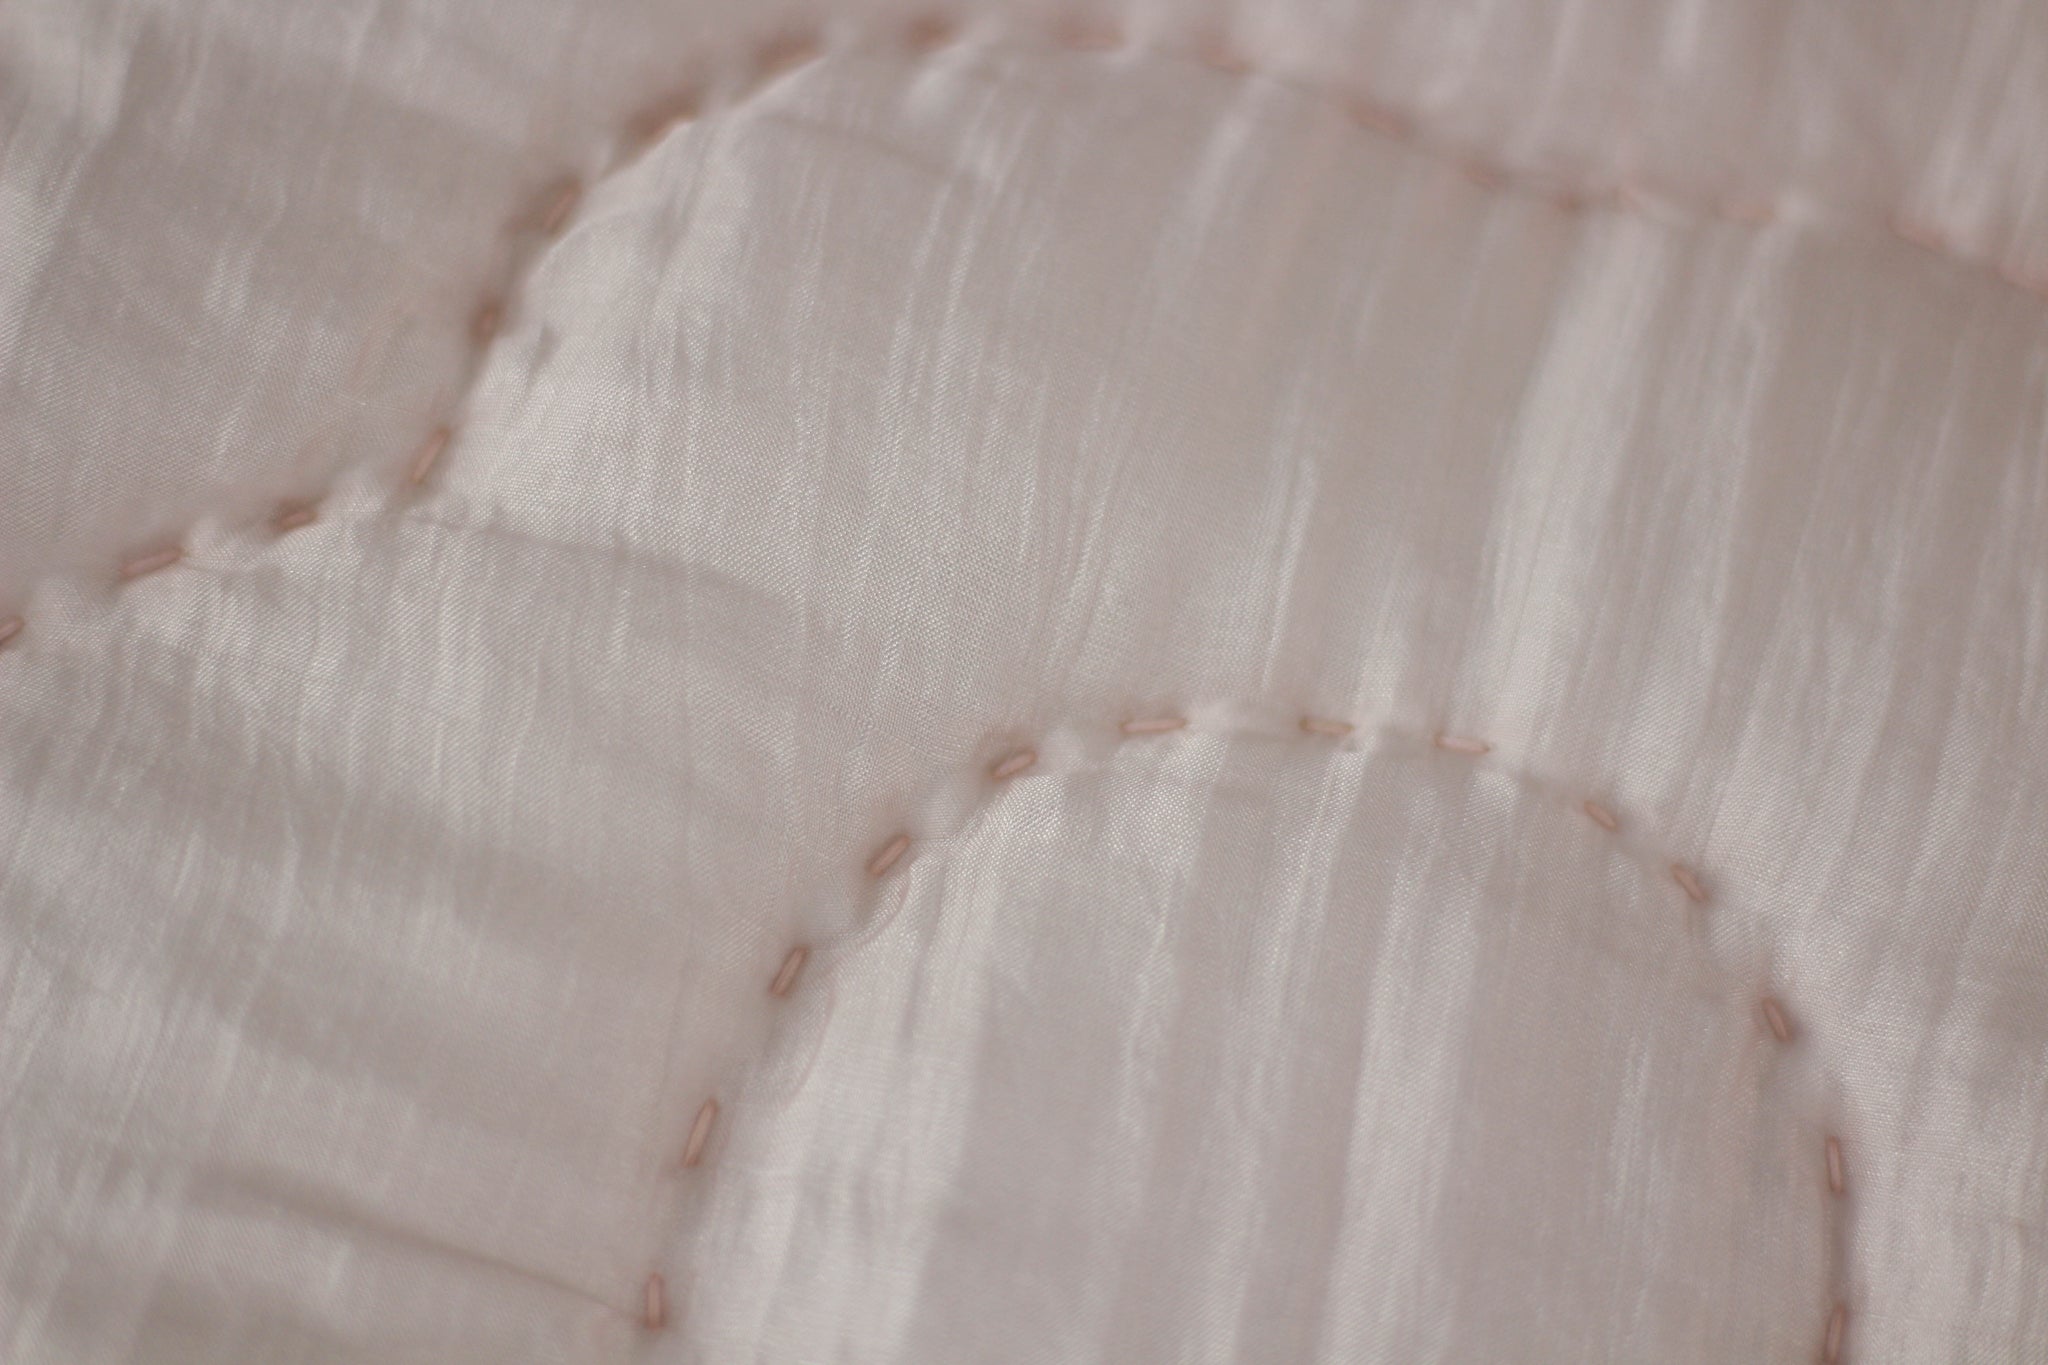 Silk Sheet with Ruffle Skirt- Silk Bed Skirt - Blush Pink